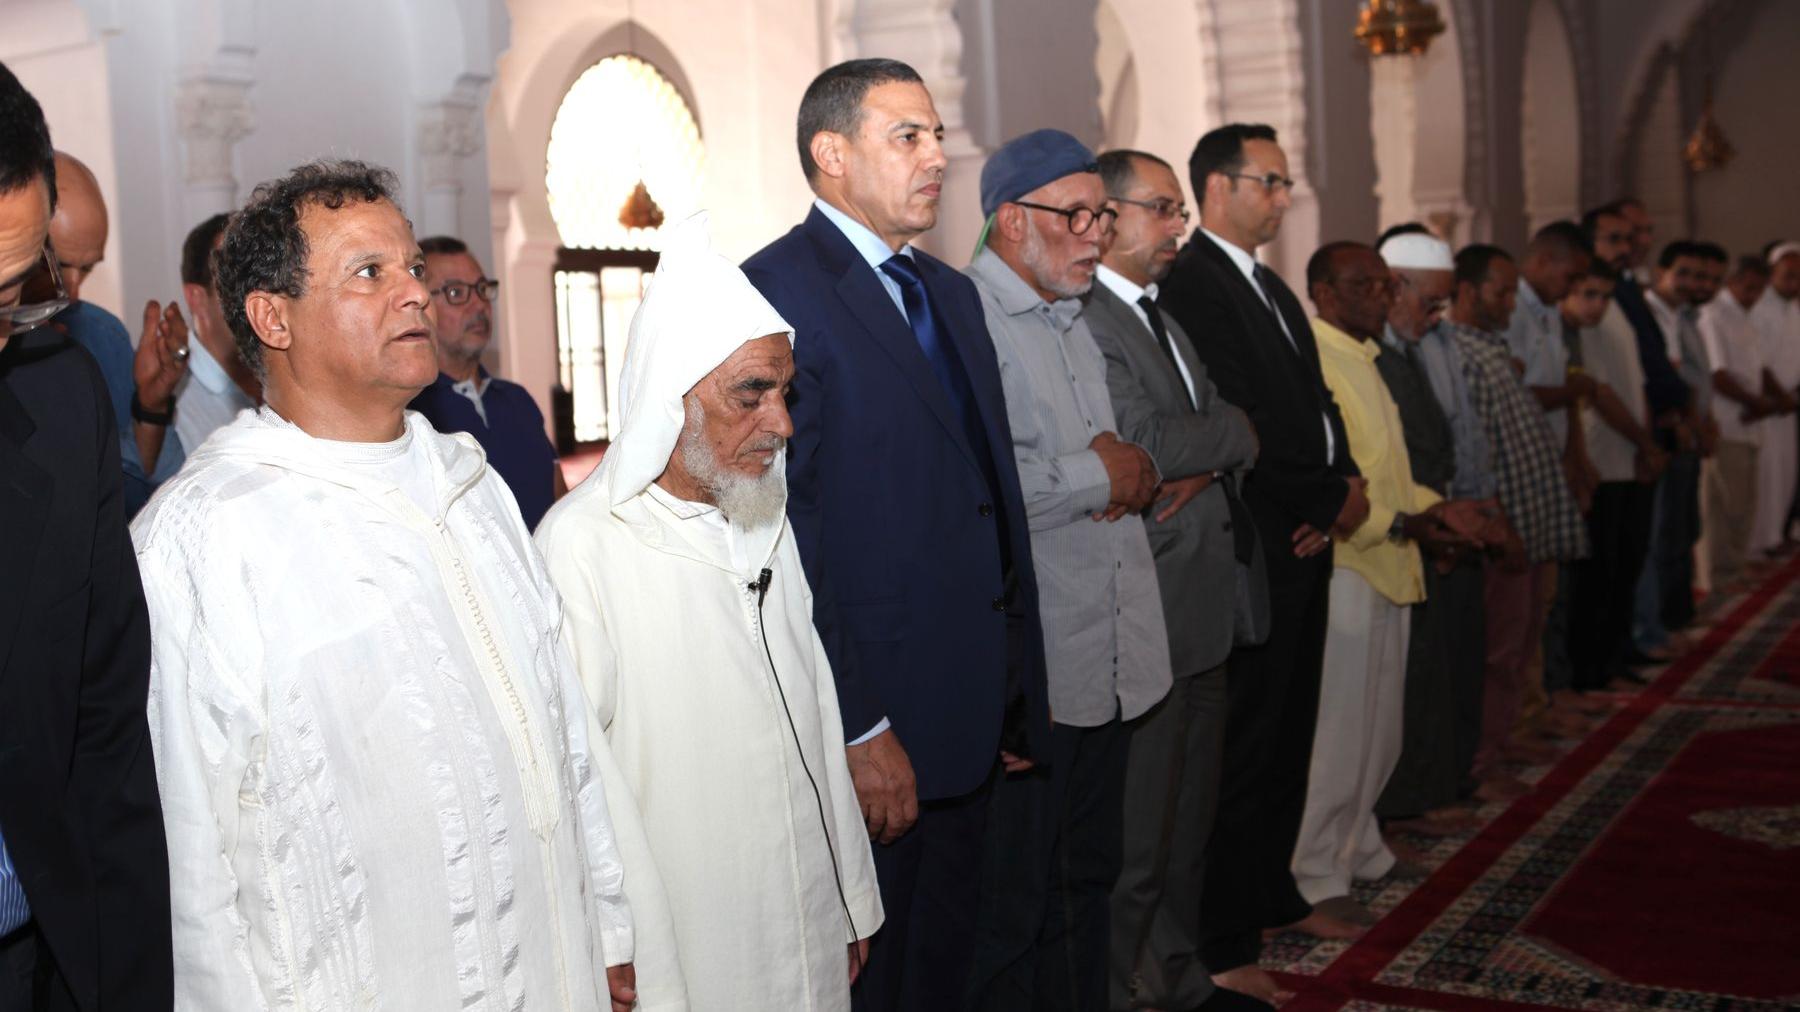 أداء صلاة الجنازة على الراحل ومن بين المصلين والي جهة مراكش تانسيفت الحوز عبد السلام بيكرات (الثالث من اليسار)
